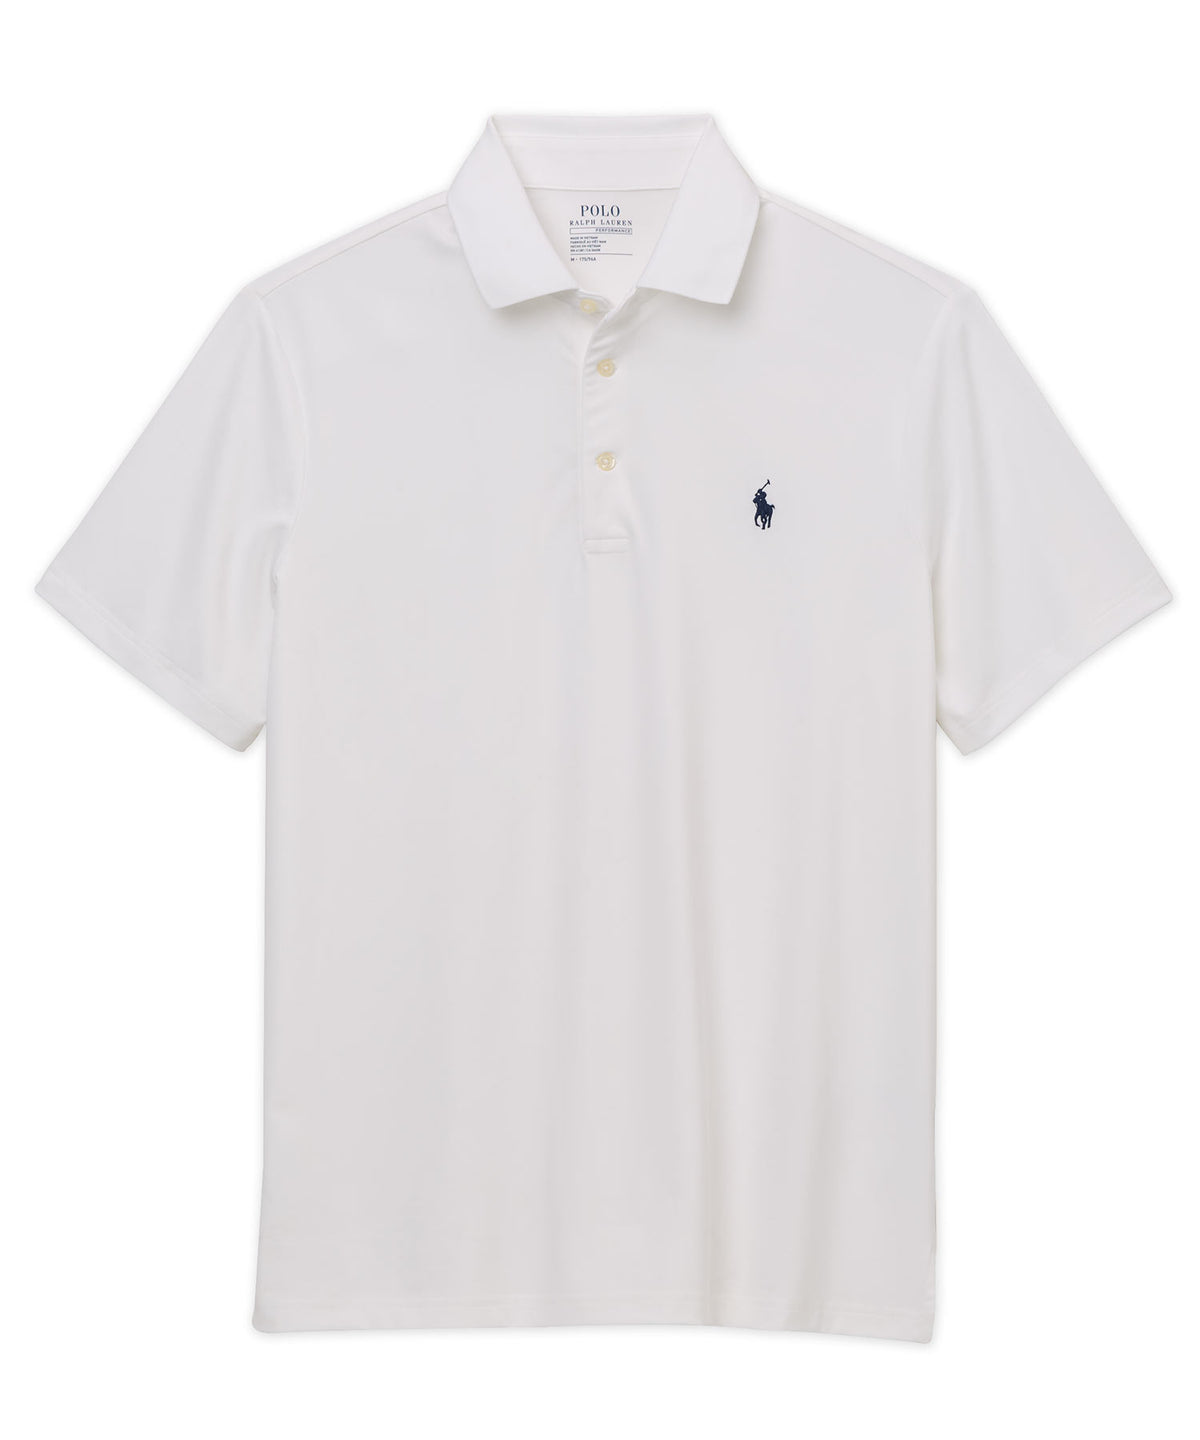 Polo Ralph Lauren Short Sleeve Performance Polo Knit Shirt, Men's Big & Tall